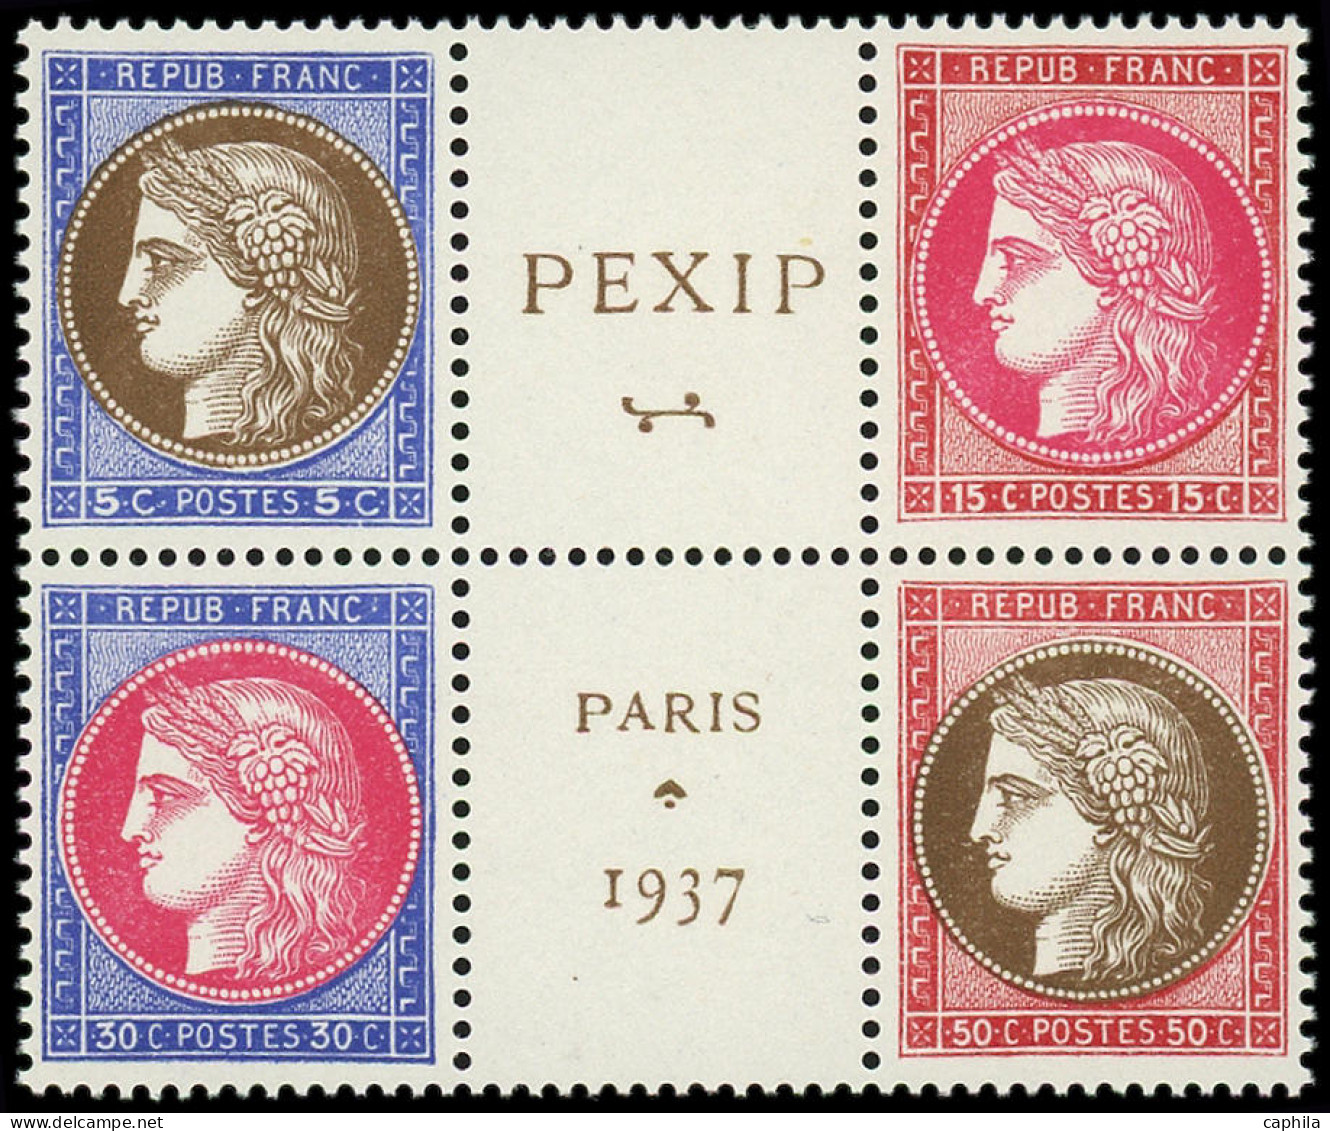 ** FRANCE - Poste - 348/51, Bloc De 4 Avec Vignette: Pexip 1937 - Neufs